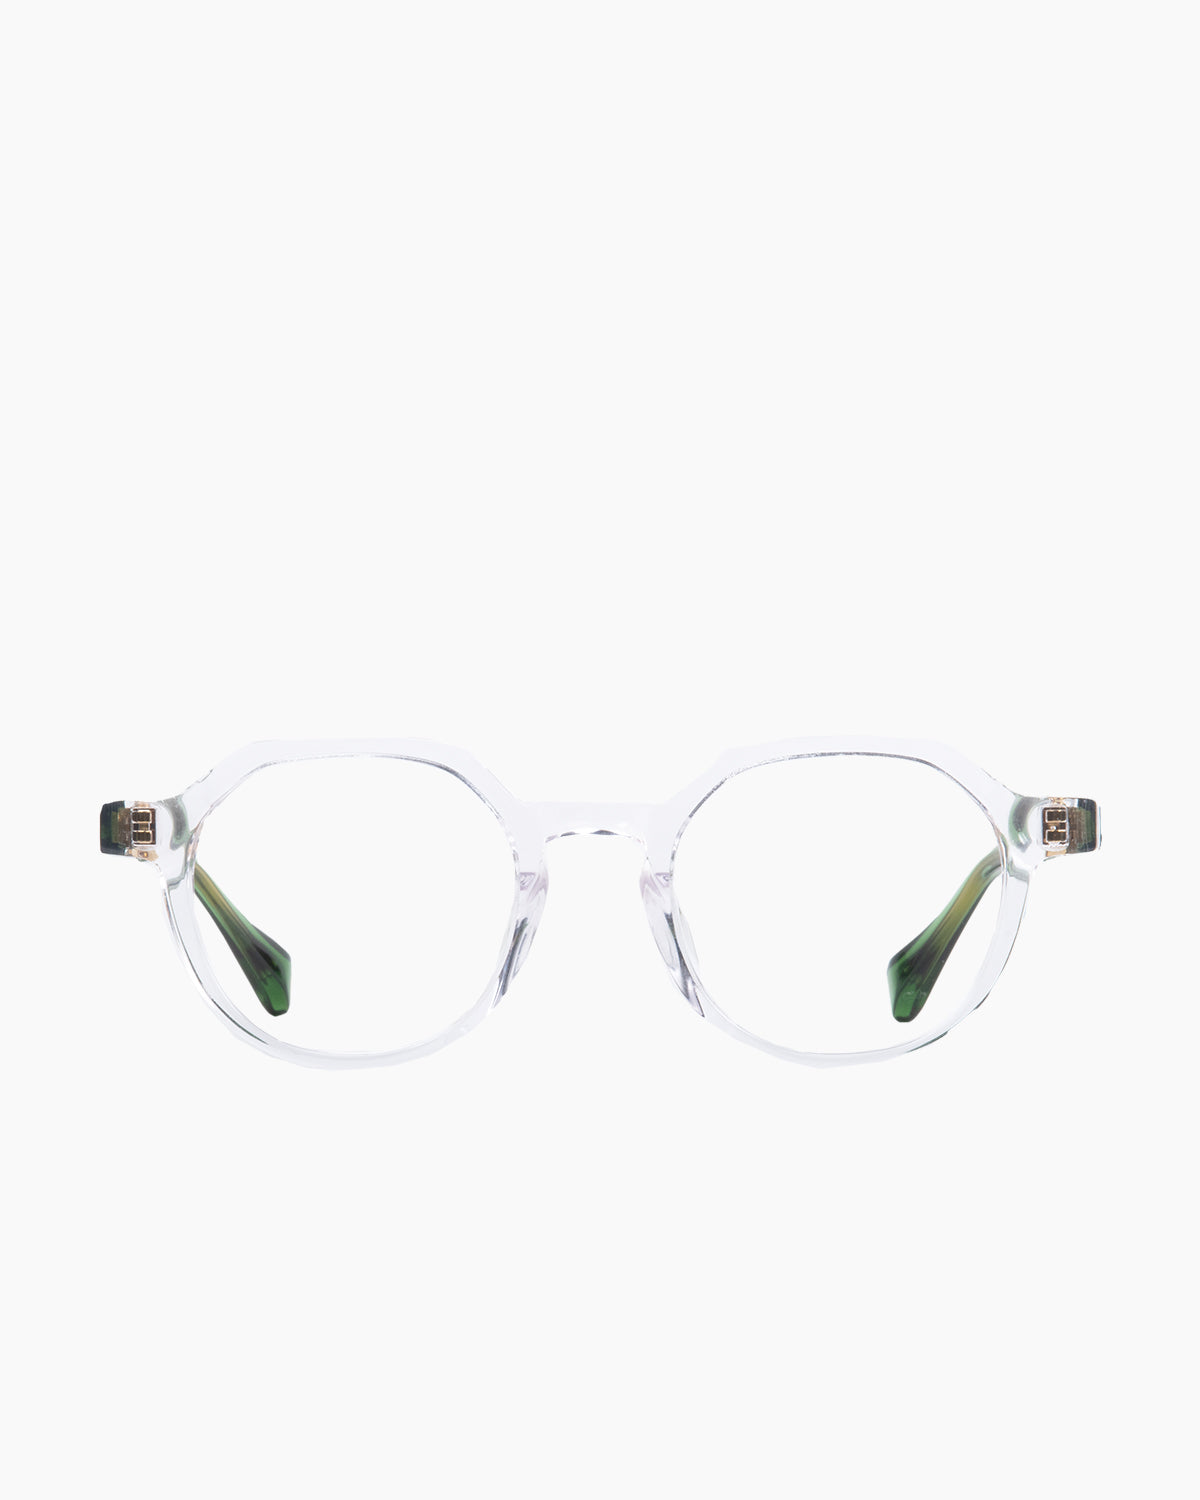 Francois Pinton - Haussmann9af - CG | Bar à lunettes:  Marie-Sophie Dion